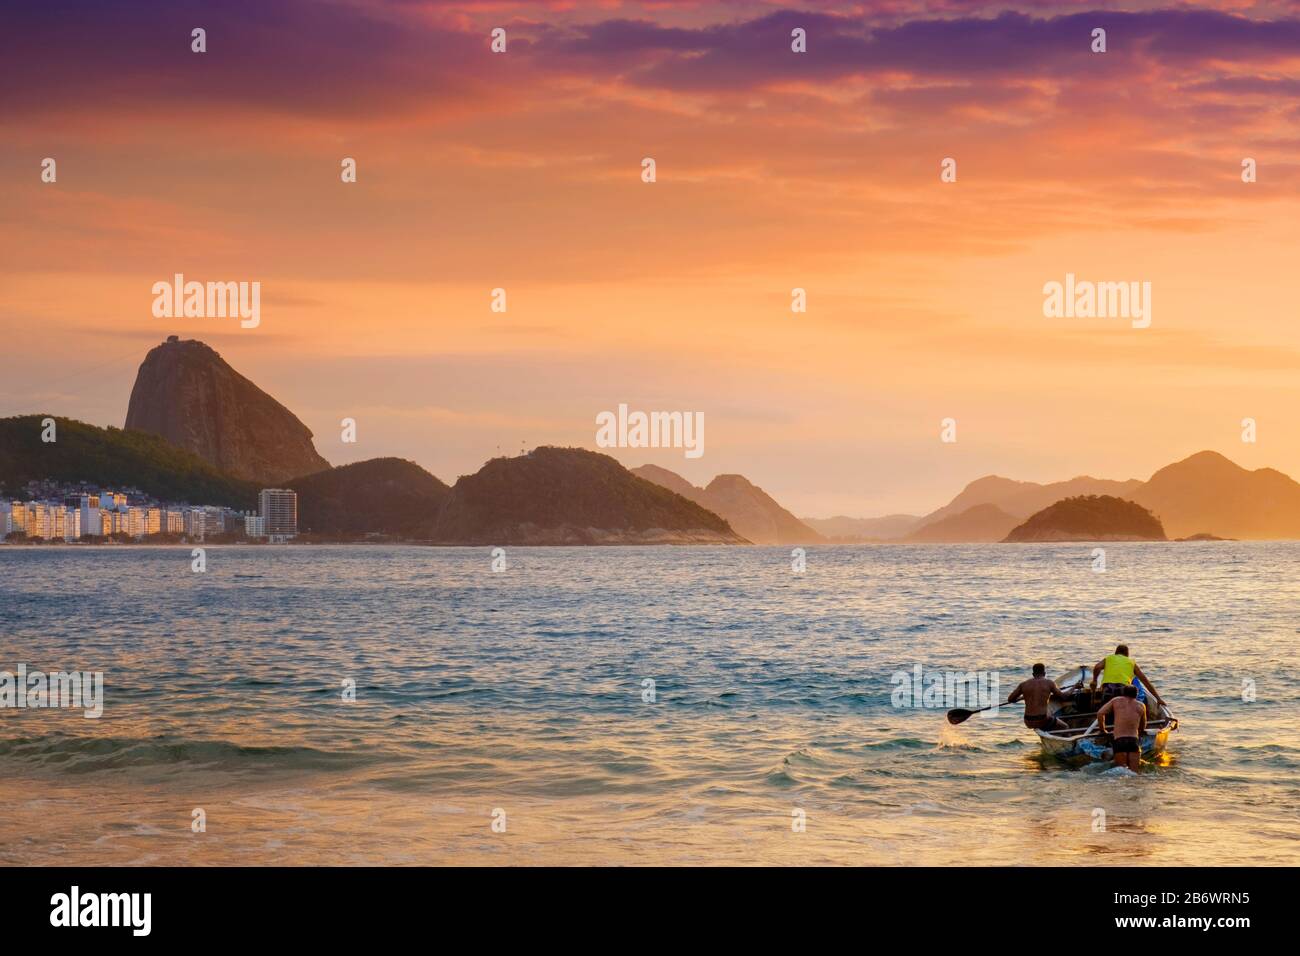 Brasilien, Rio, Rio de Janeiro. Fischer starten ein Boot mit dem Sugar Loaf, dem Leme-Hügel und den Bergen von Rio de Janeiro dahinter Stockfoto